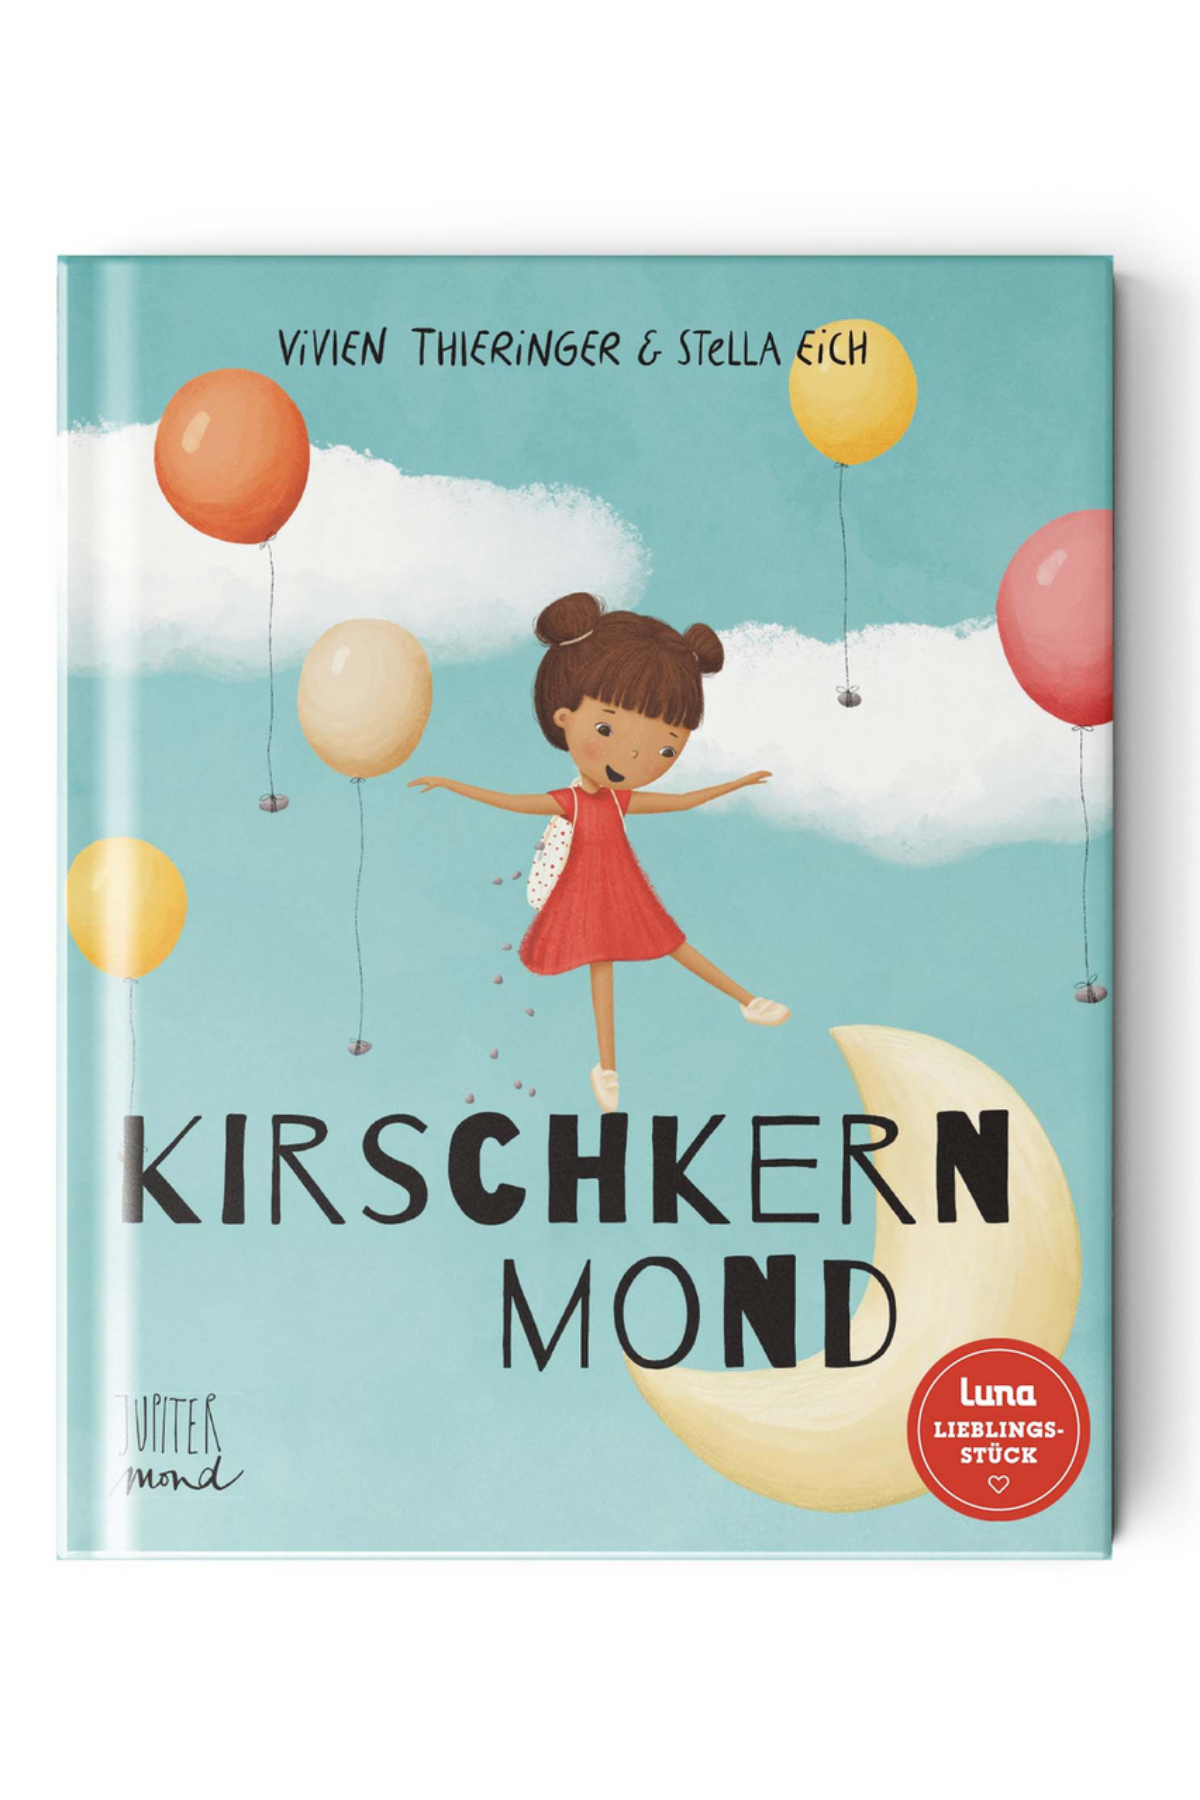 Kinderbuch "Kirschkernmond"